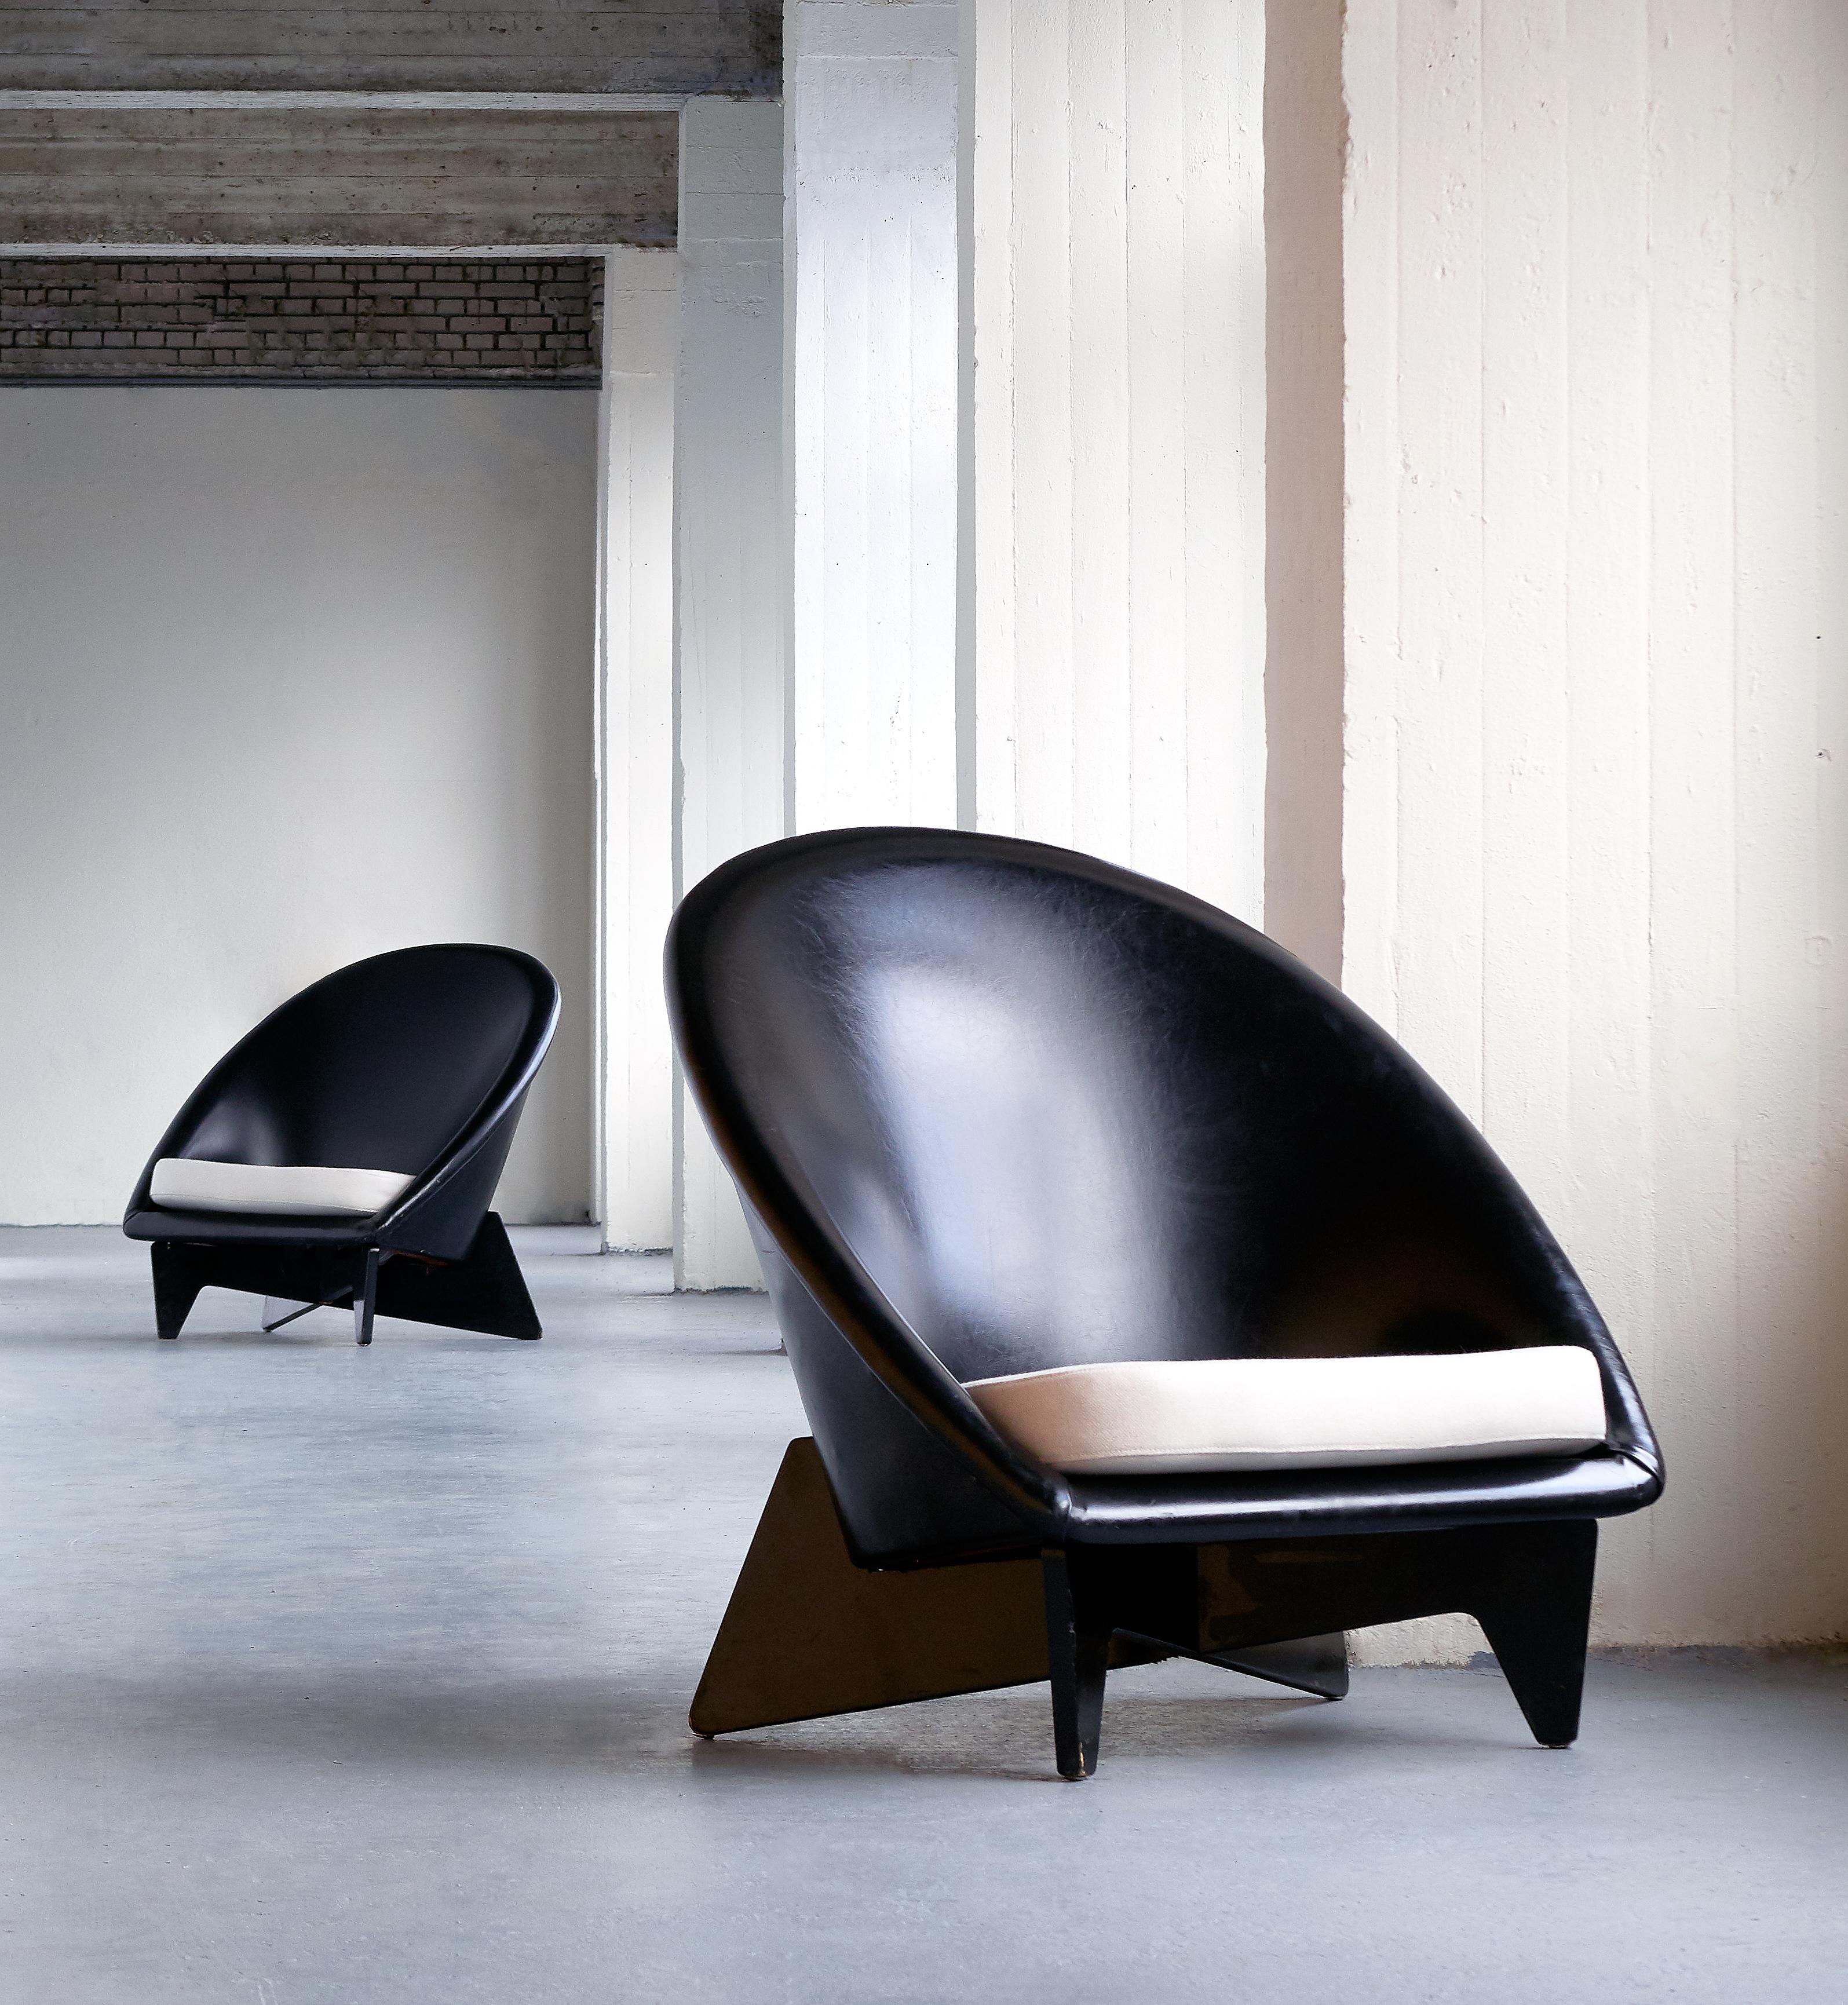 Cette paire de chaises longues exceptionnellement rare a été conçue par Antti Nurmesniemi pour le Palace Hotel d'Helsinki en 1952. Les chaises ont été commandées sur mesure pour meubler le hall et d'autres espaces publics de l'intérieur de l'hôtel